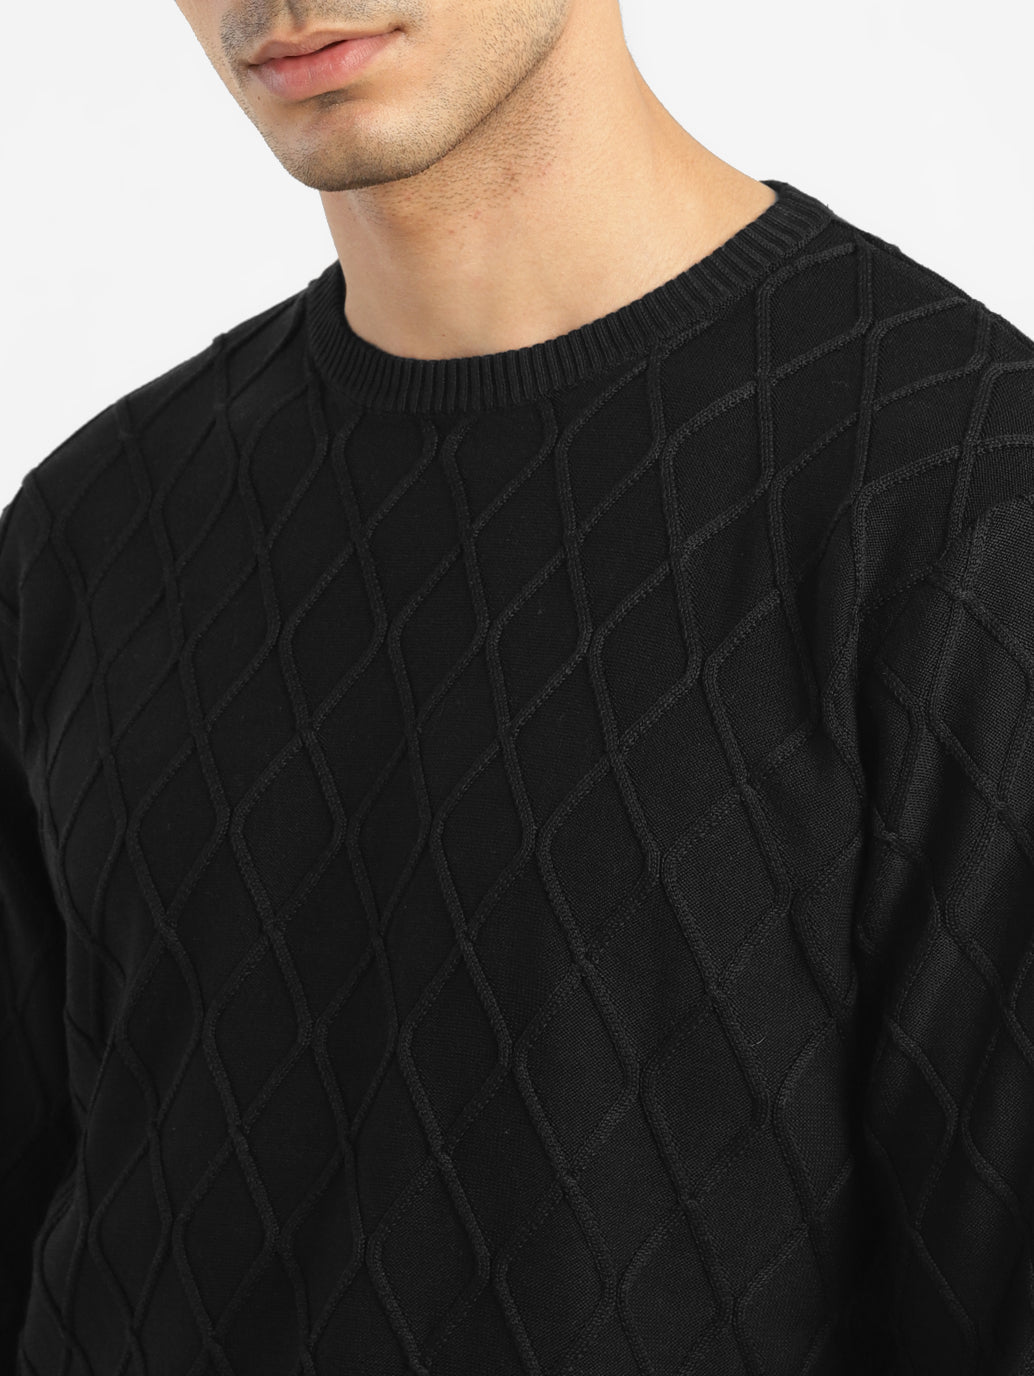 Men's Self Design Black Crew Neck Sweater